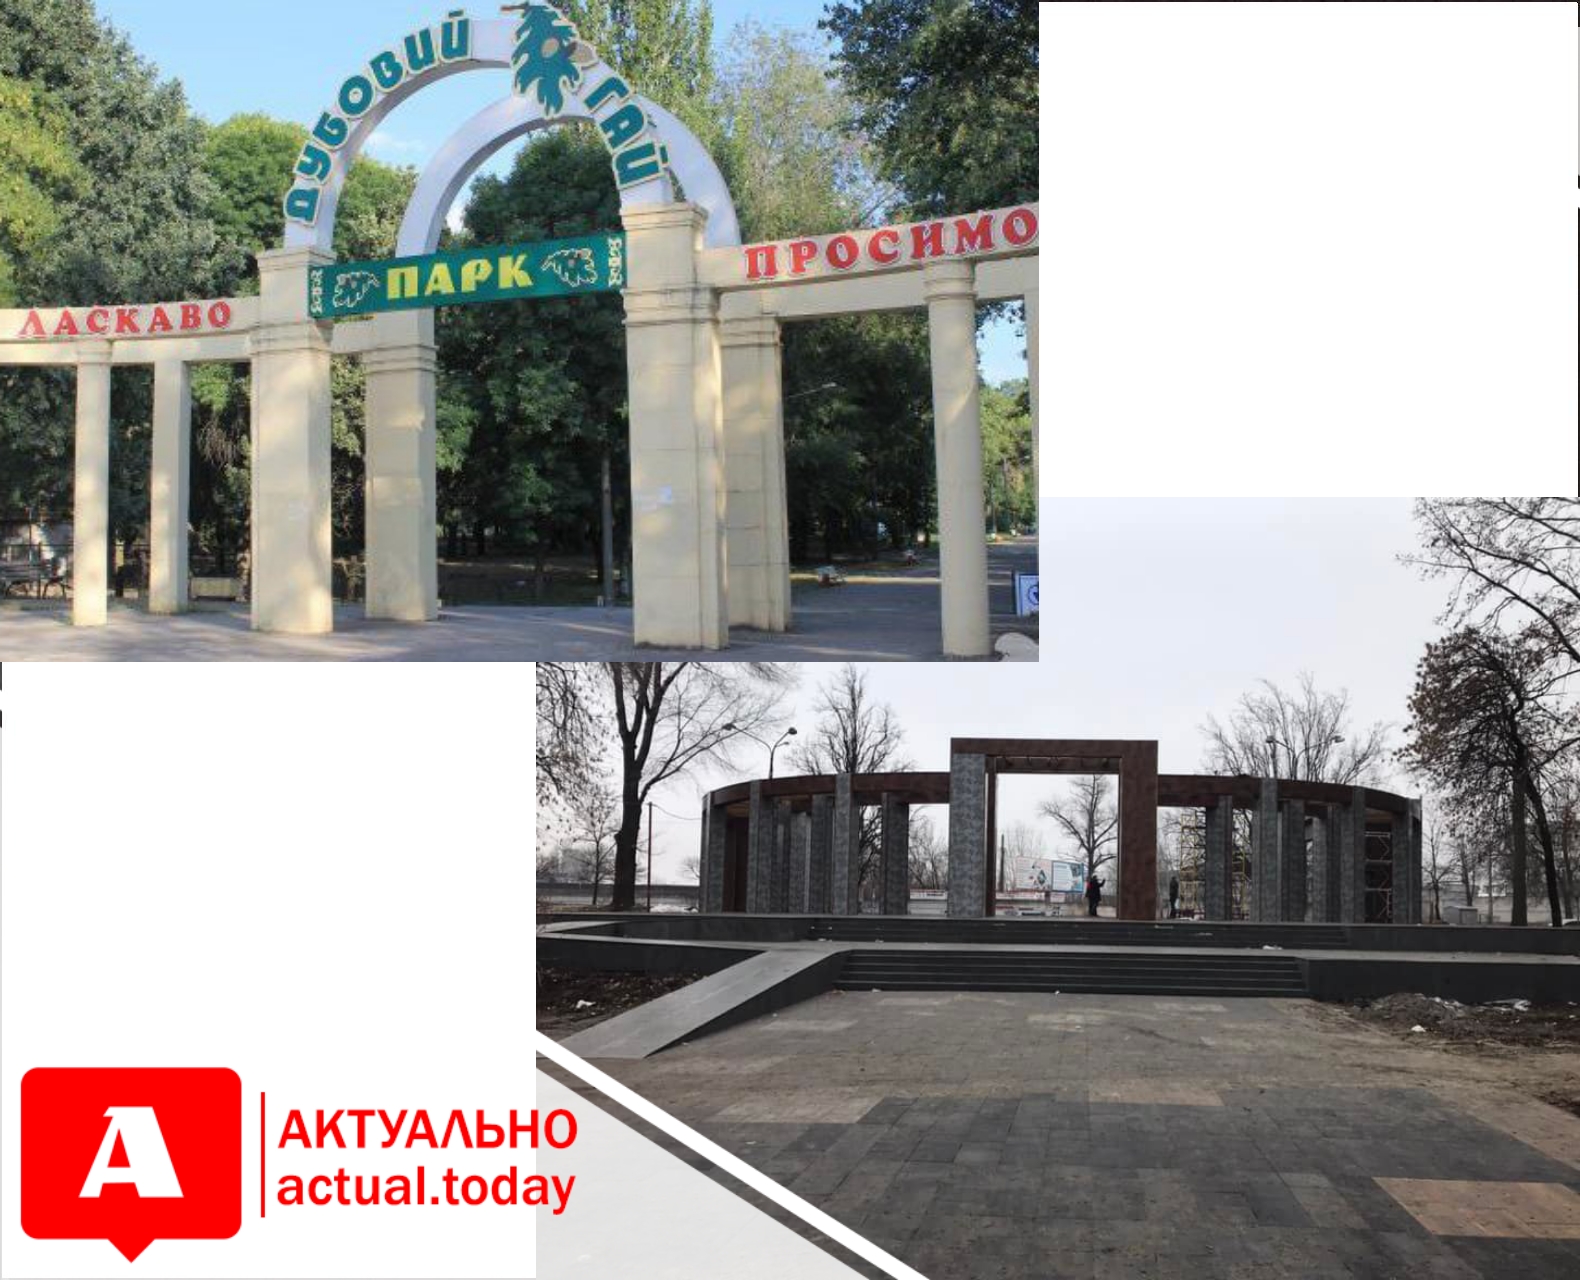 Жители Запорожья сравнили обновленную центральную арку “Дубовой рощи” с входом на кладбище (ФОТО)